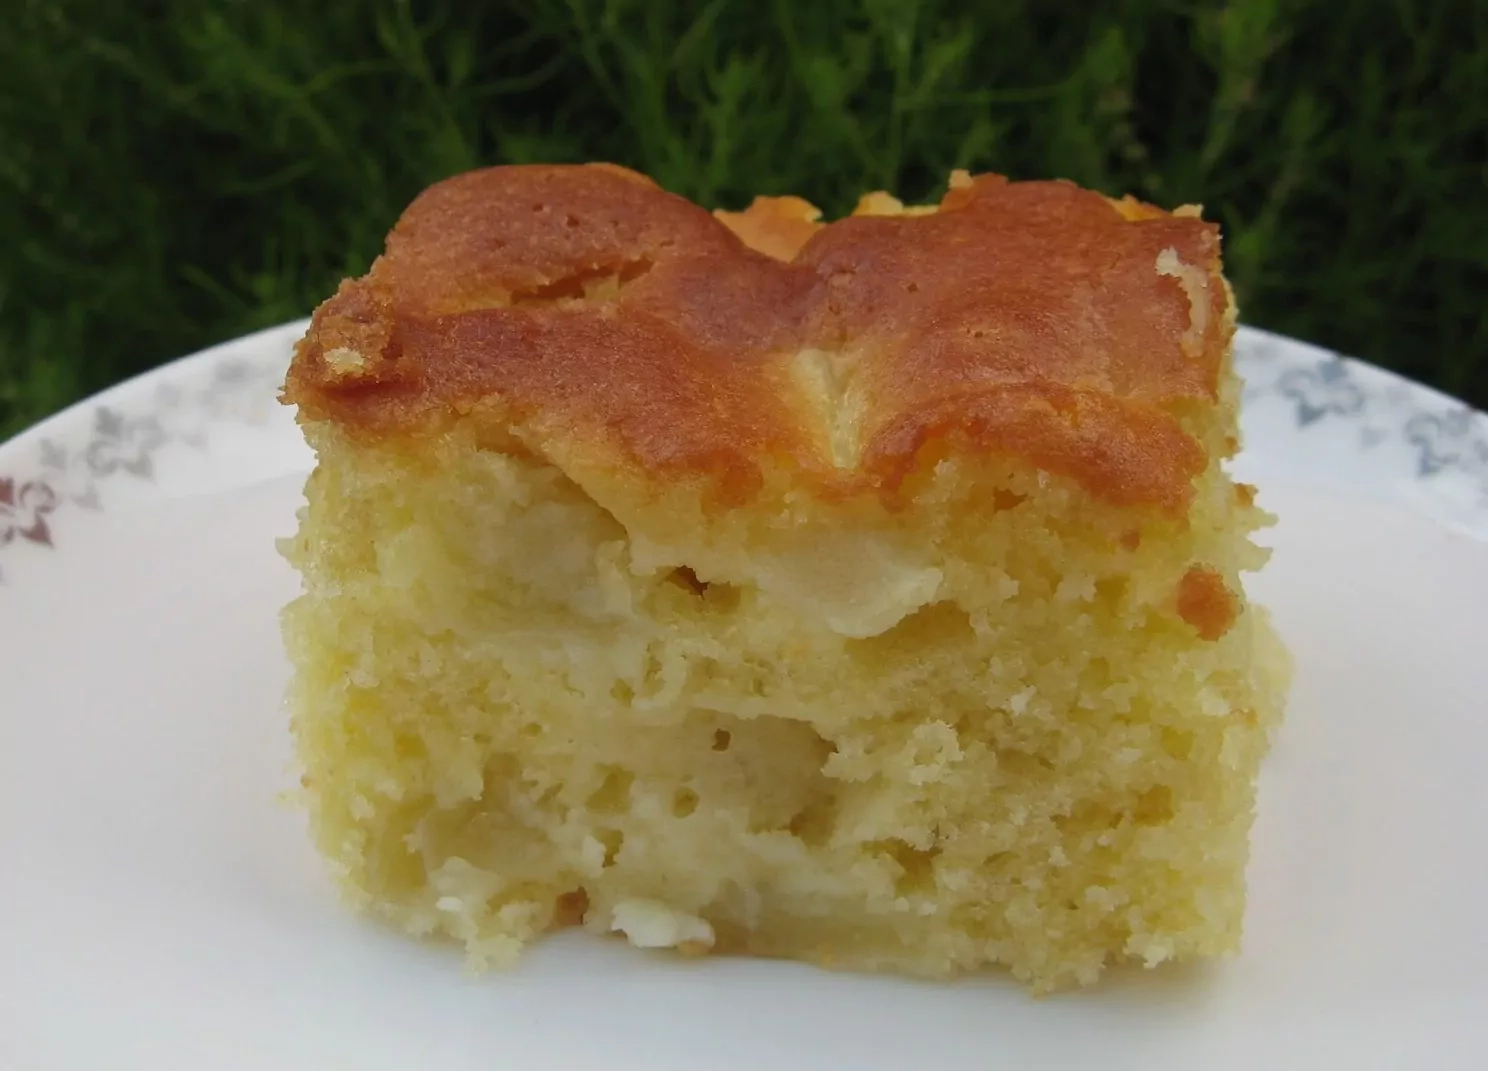 Senelės obuolių pyragas - labai lengva pasigaminti, o rezultatas pranoksta lūkesčius!